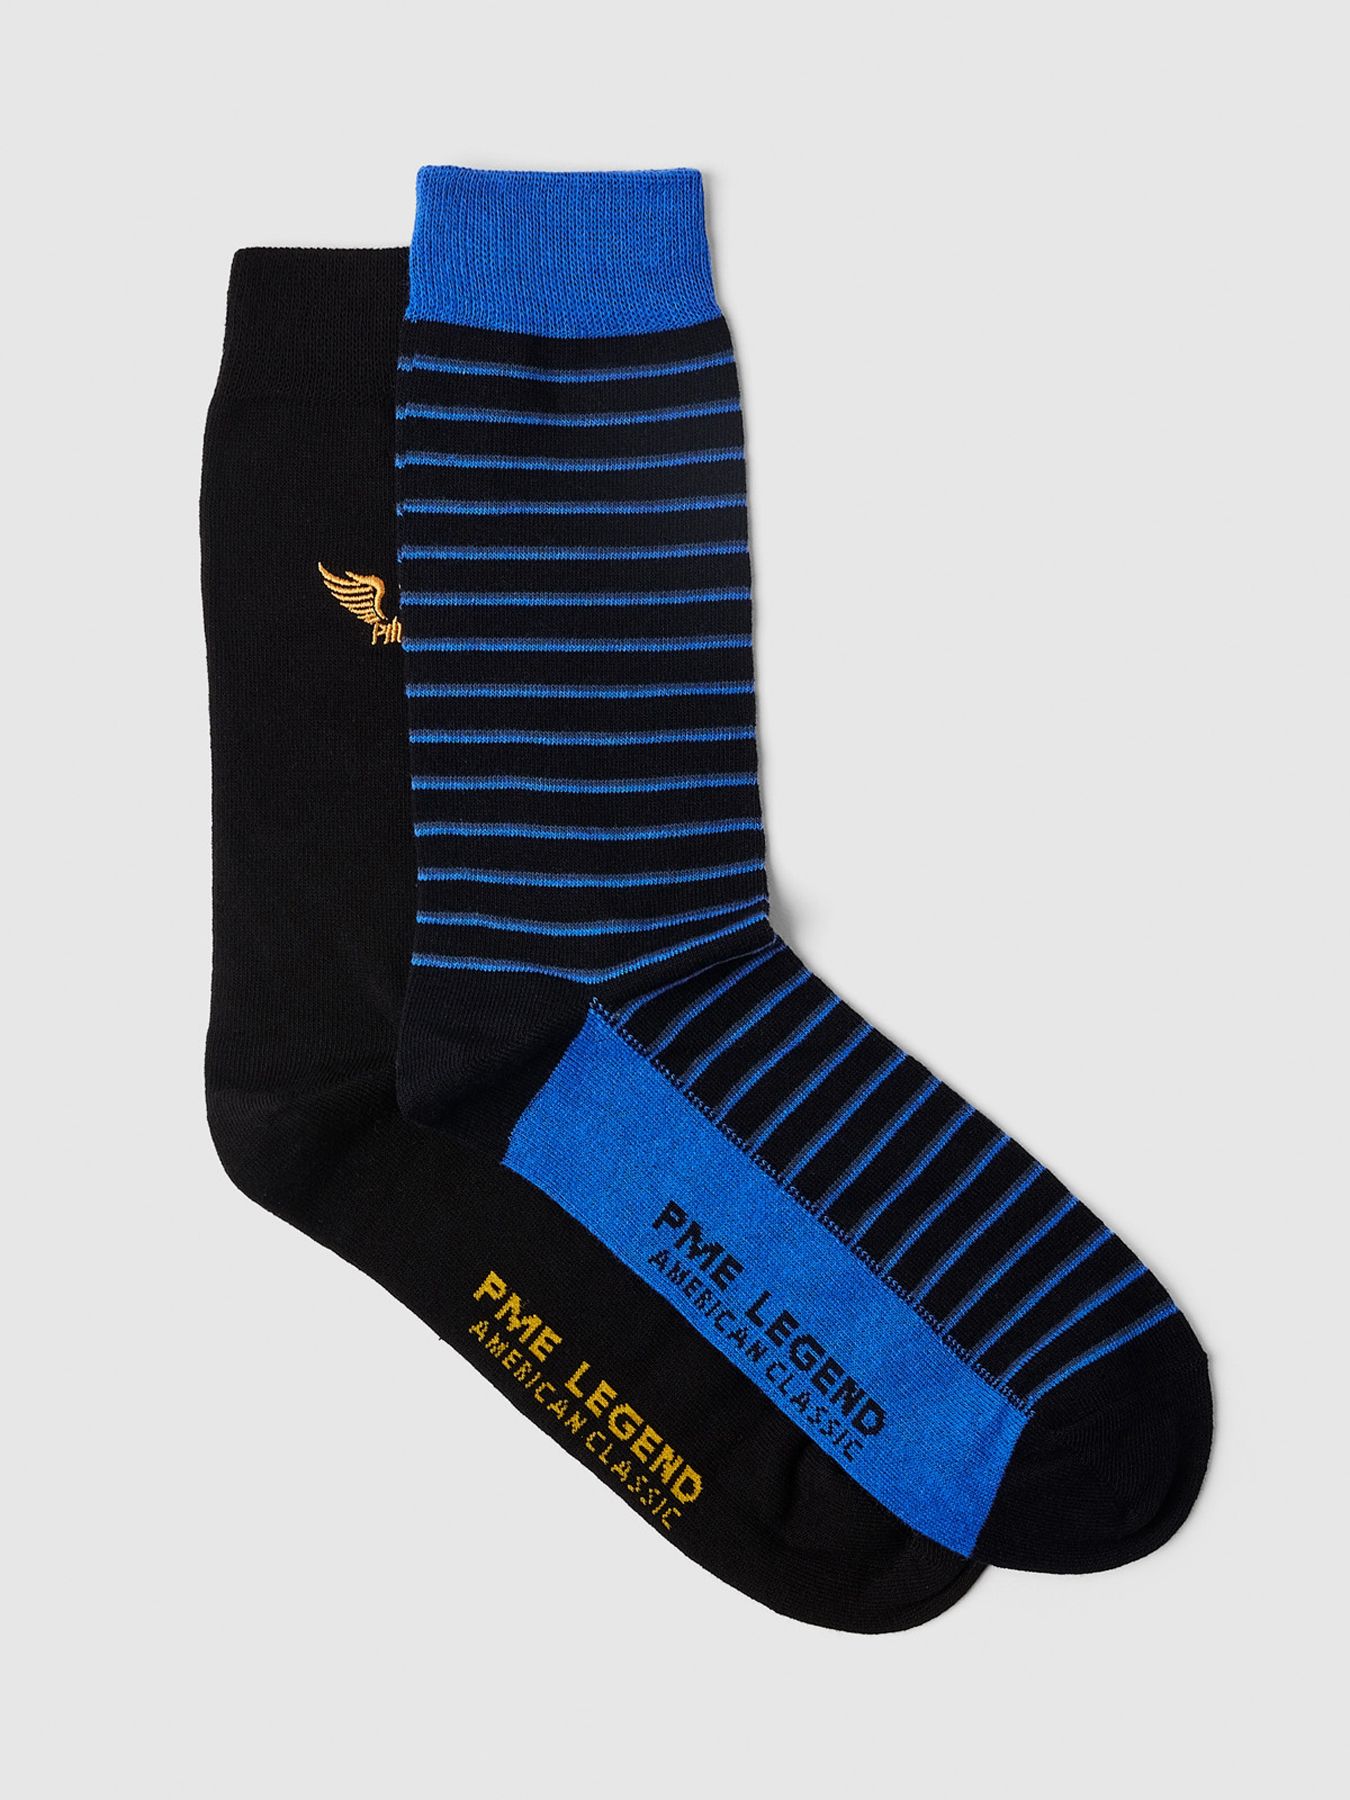 Pme Legend Socks Cotton blend socks 2-pack Baleine Blue 00105123-5324